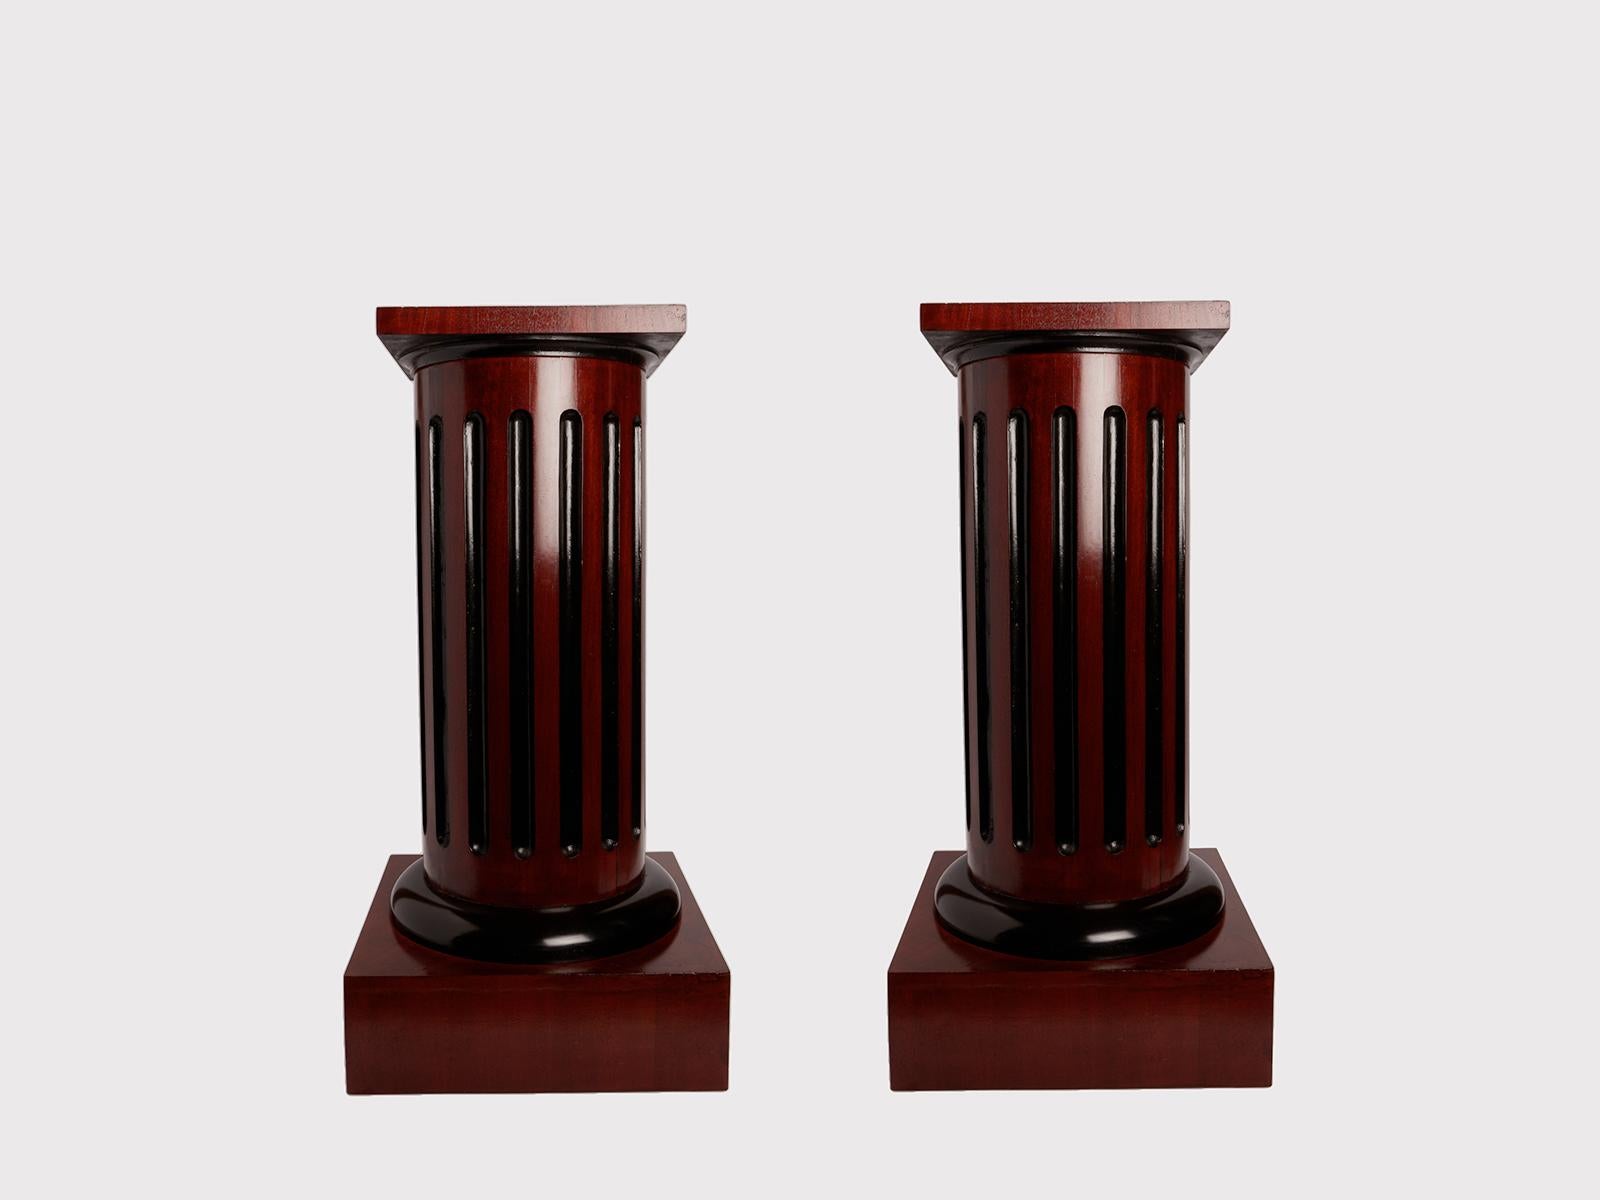 Dieses Paar kleiner runder russischer Säulen im Biedermeir-Stil ist aus Obstholz mit Mahagoni-Furnier gefertigt. Die Kanneluren der Säule sind schwarz lackiert. Russland um 1890. 